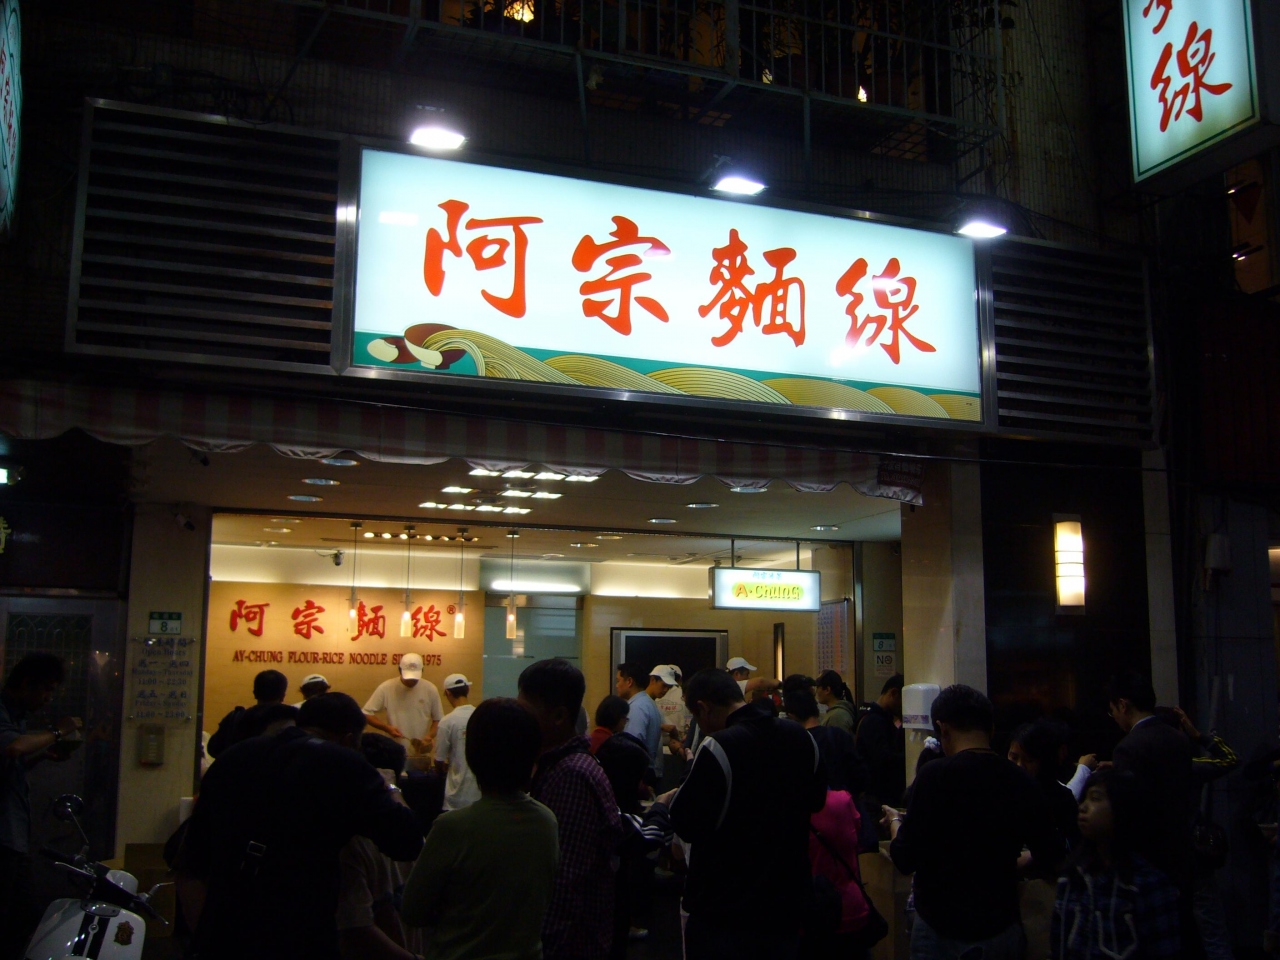 台湾 夜市 おもしろ看板２ 台北 台湾 の旅行記 ブログ By Youyou123さん フォートラベル